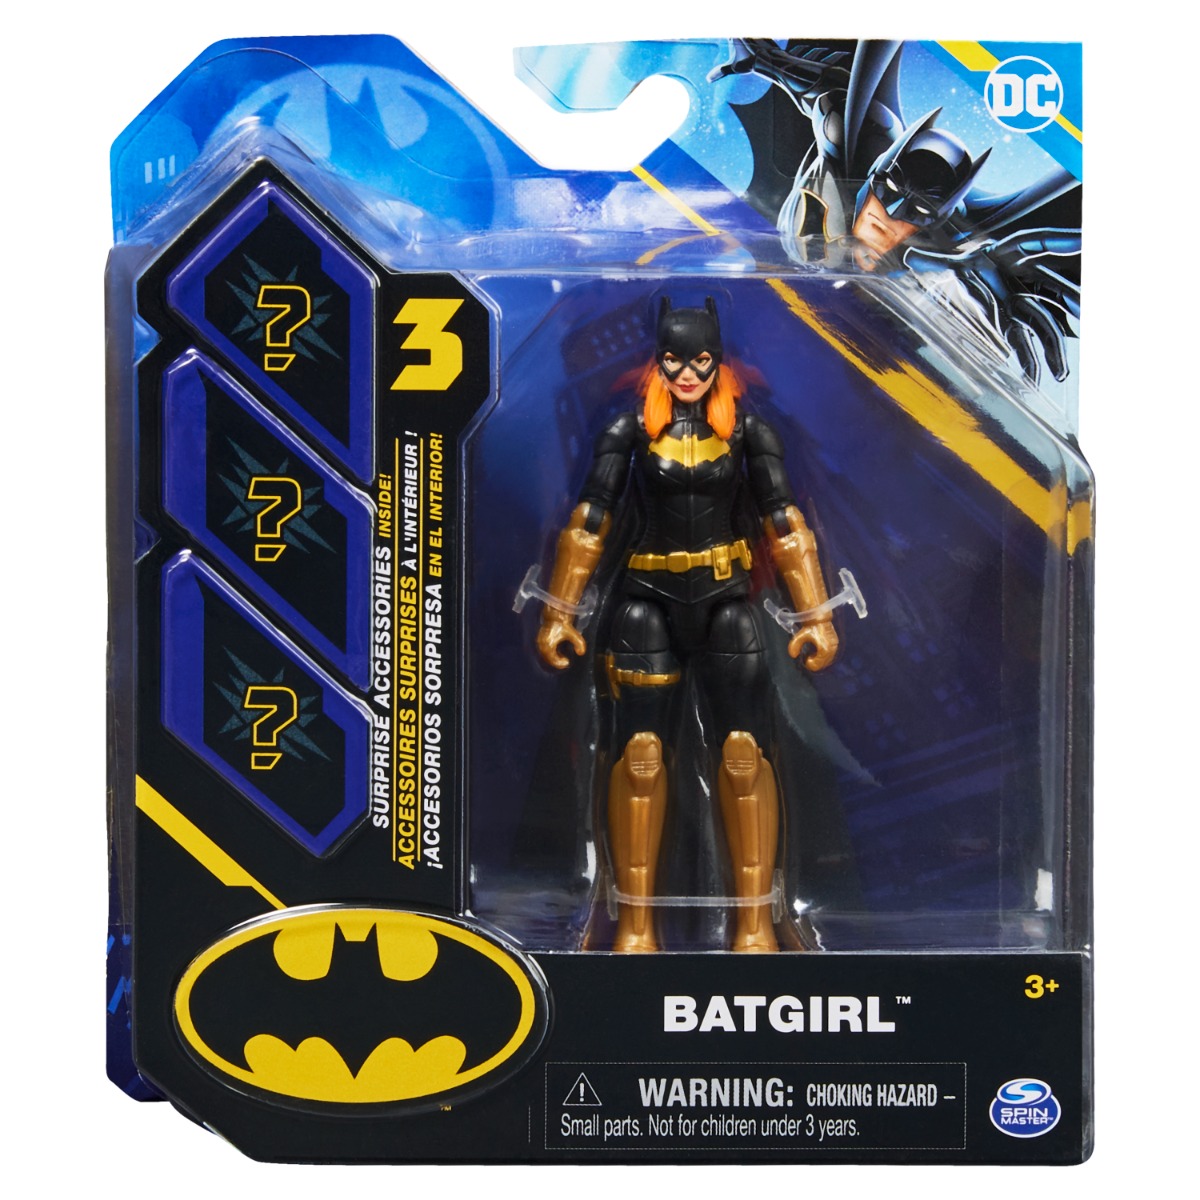 Set Figurina cu accesorii surpriza Batman, Batgirl 20138127 Figurine 2023-09-26